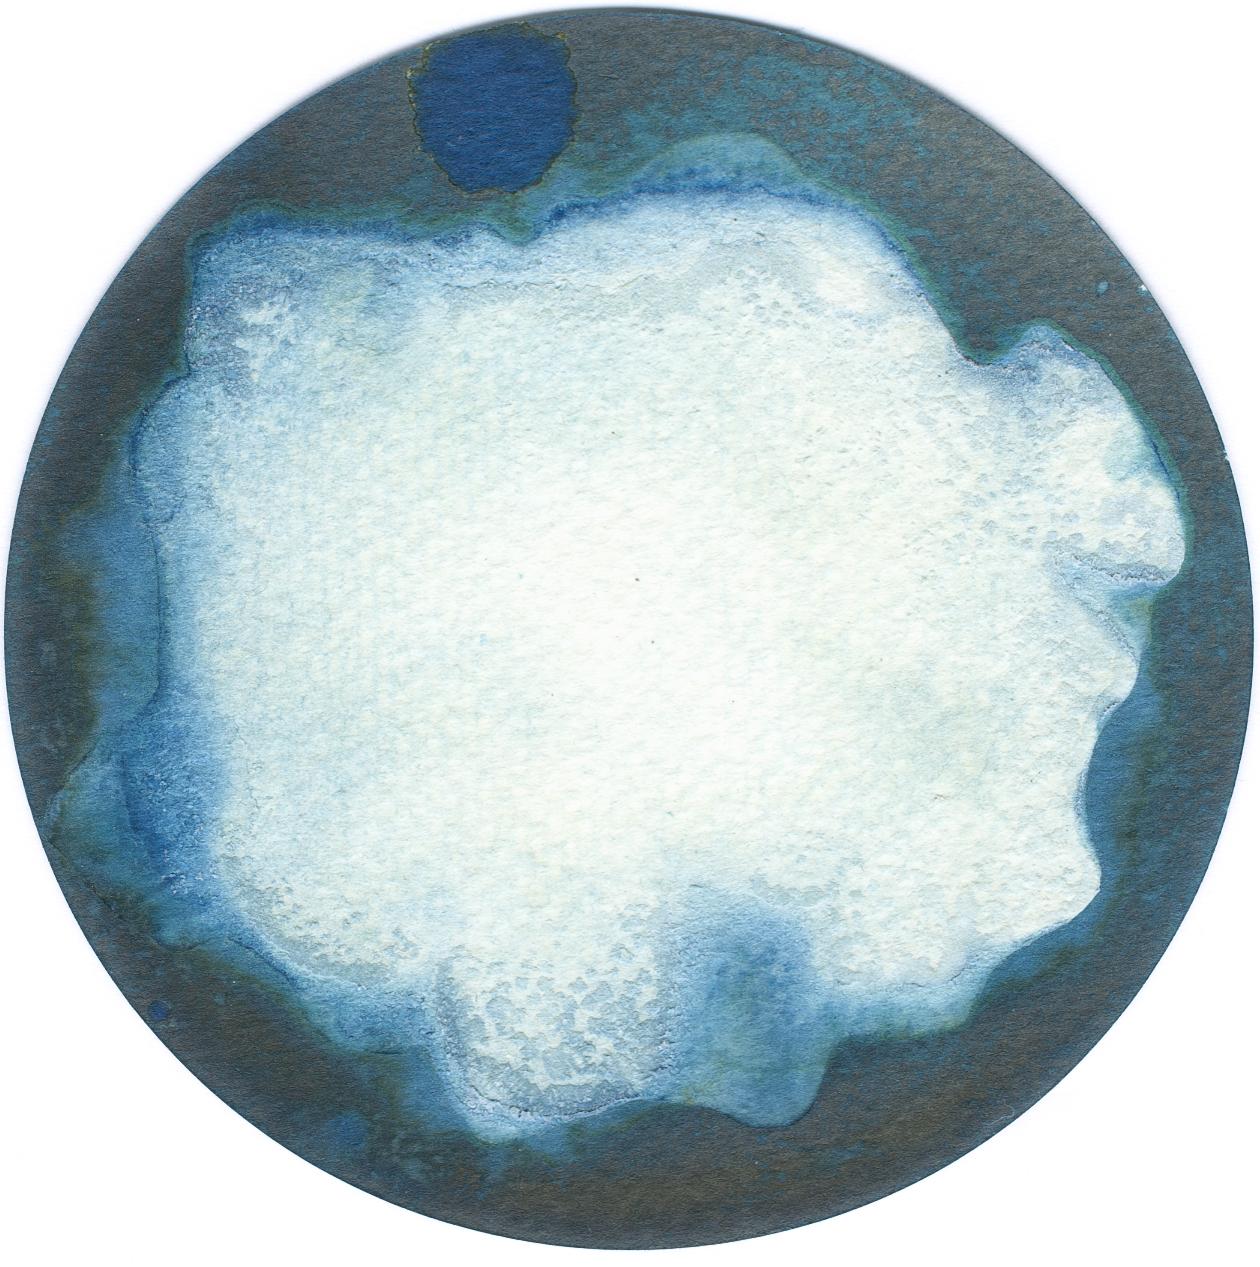 22, 23 und 24. Cyanotypie-Fotografien, montiert in einer hochfesten Glasschale (Abstrakt), Sculpture, von Paola Davila